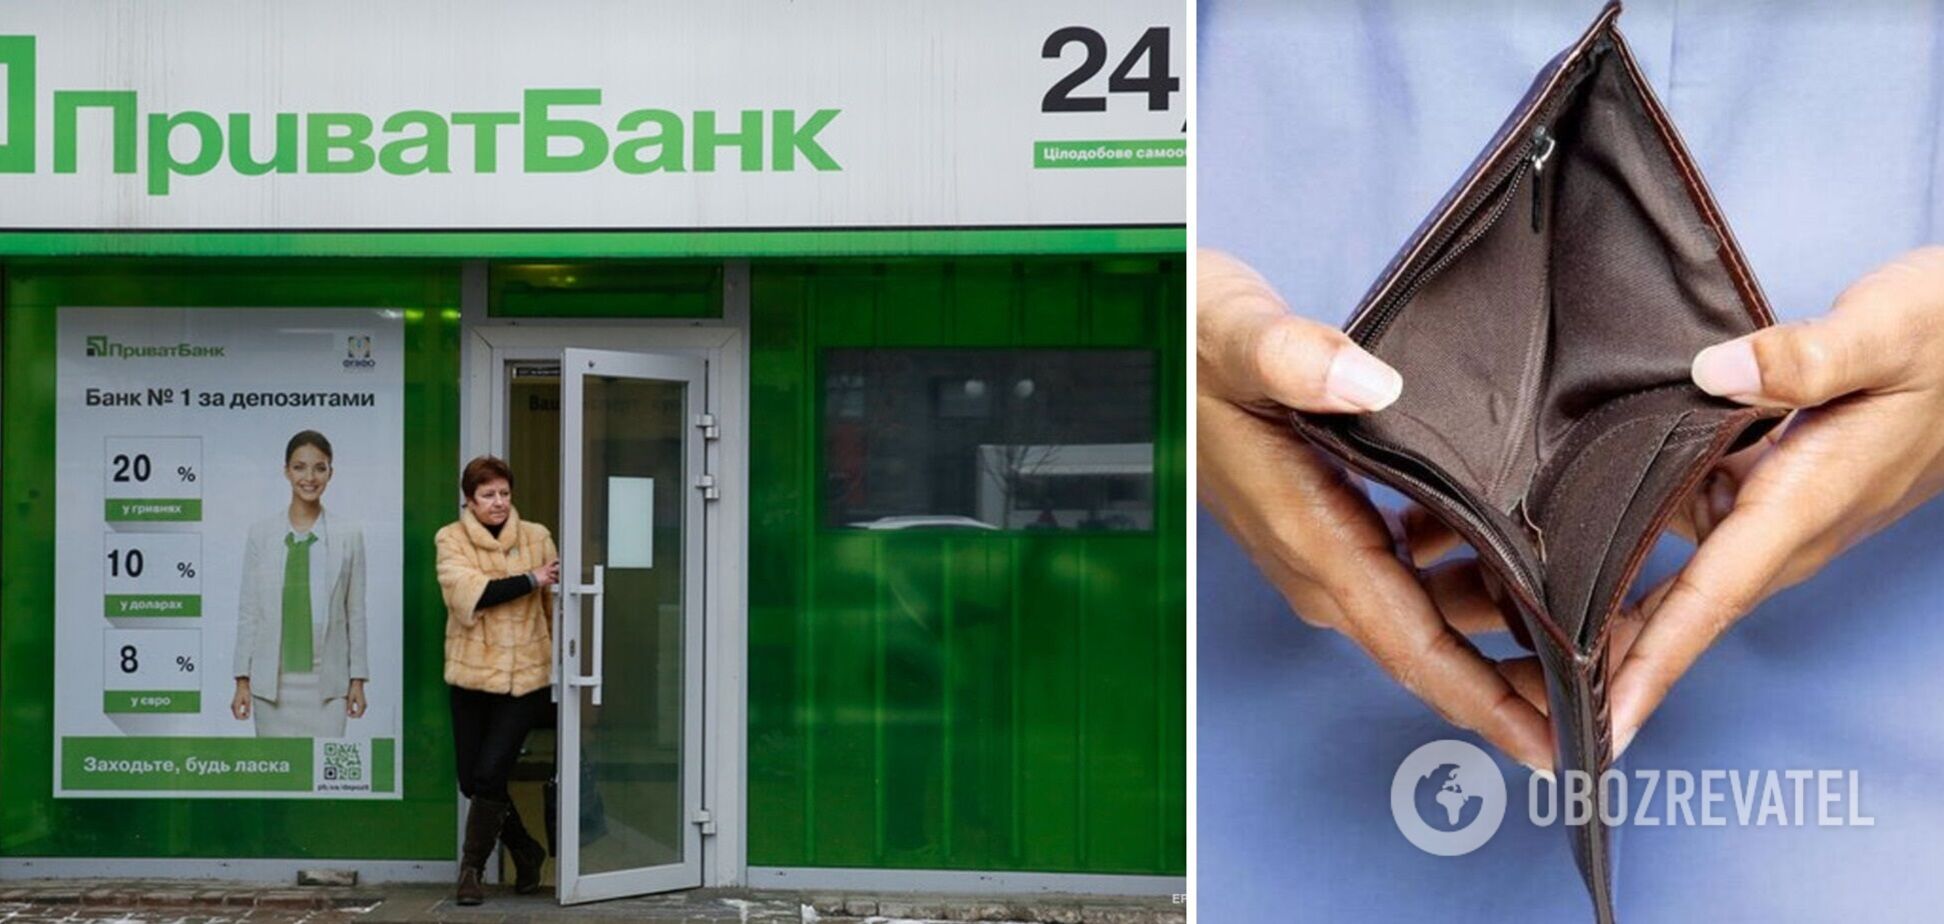 У клієнтки ПриватБанку зникли з картки 13 тис. грн